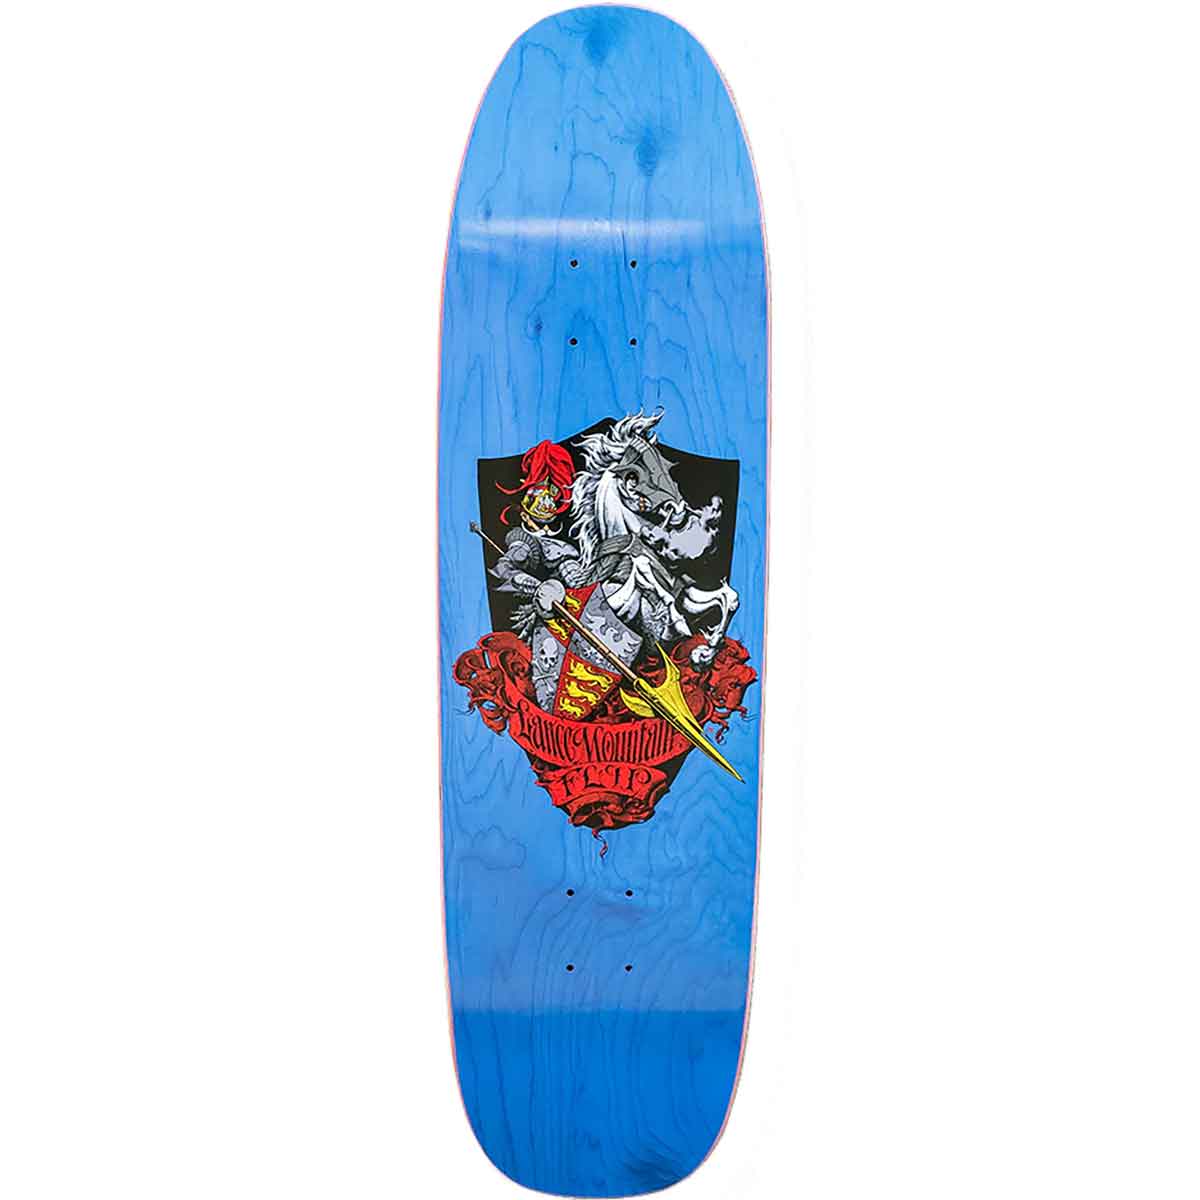 Santa Cruz Cheech & Chong Skateboard Sticker Decal new 